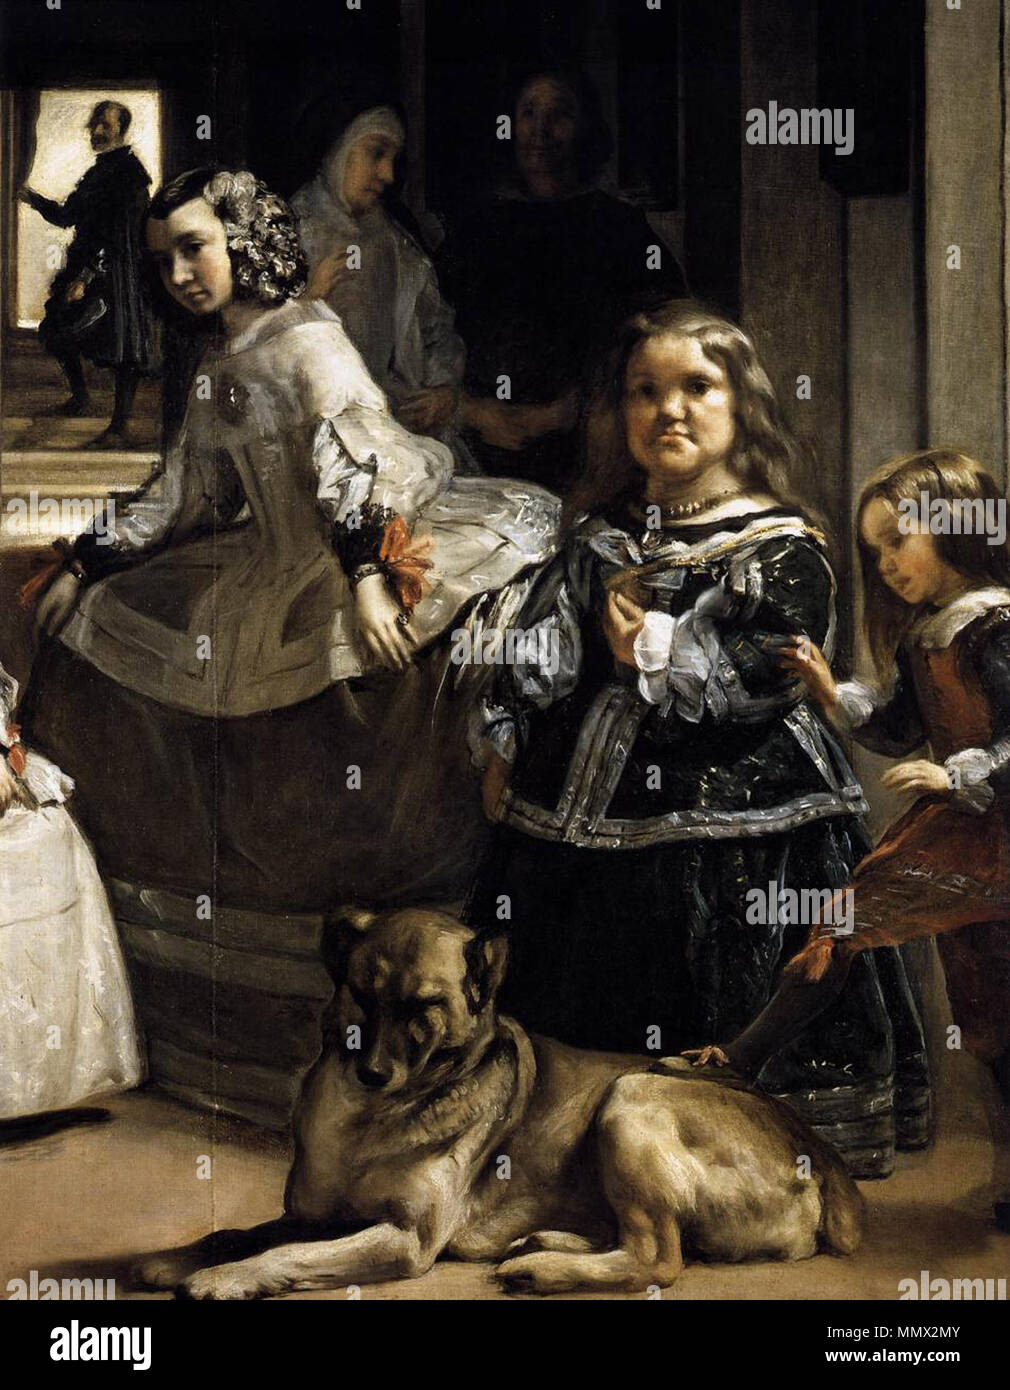 Diego Velázquez - Las Meninas (detail) - WGA24454 Stock Photo - Alamy